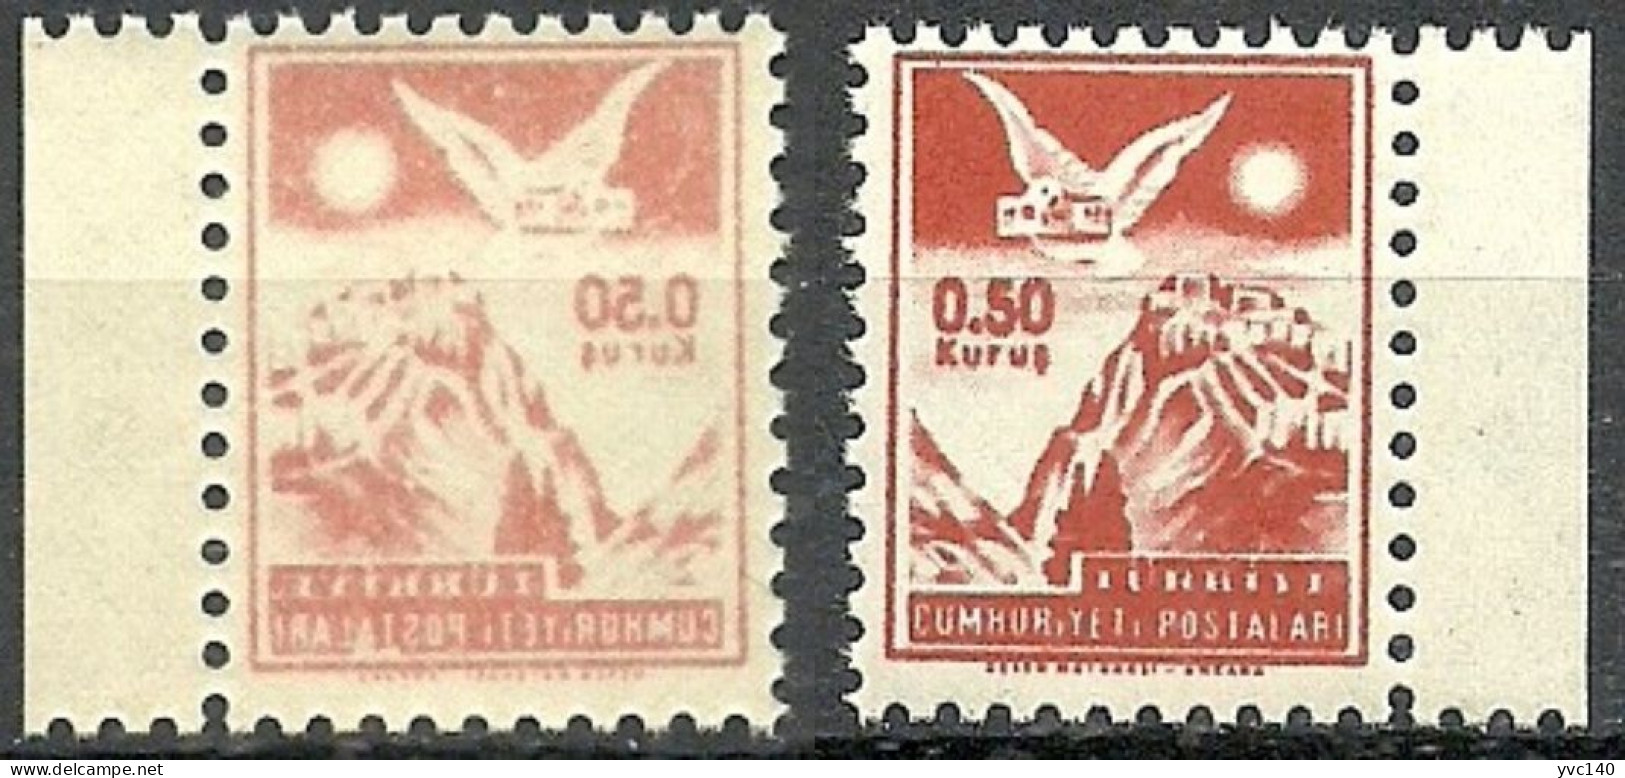 Turkey; 1954 "0.50 Kurus" Postage Stamp "Abklatsch Print" - Ongebruikt